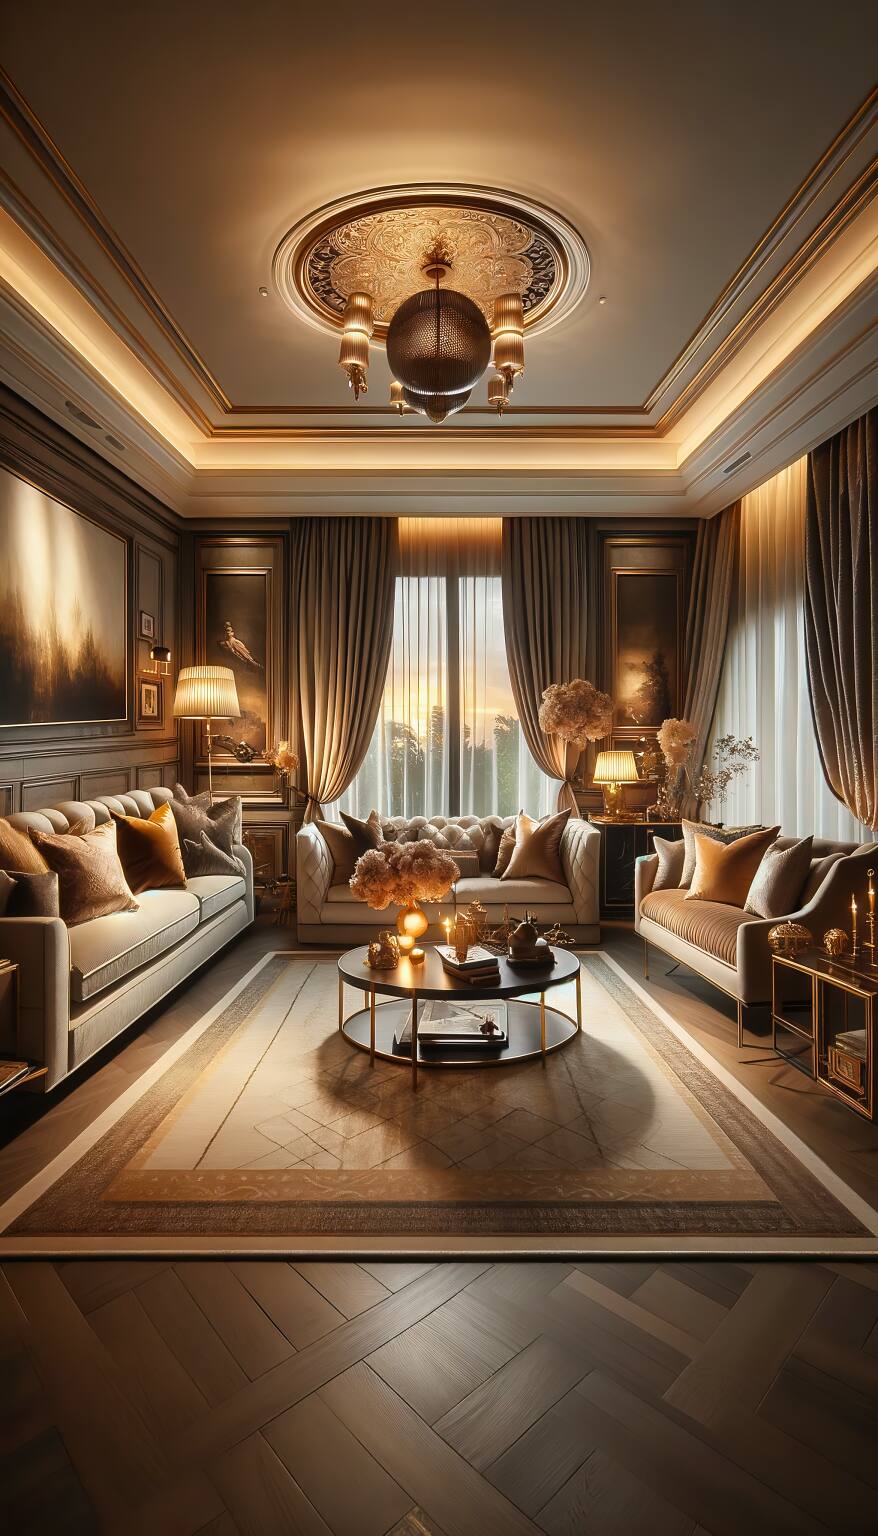 Ein Romantisches Wohnzimmer In Gold- Und Taupetönen Mit Einem Eleganten Sofa Und Luxuriösen Sesseln, Umgeben Von Einer Warmen Und Verträumten Dämmerstimmung.